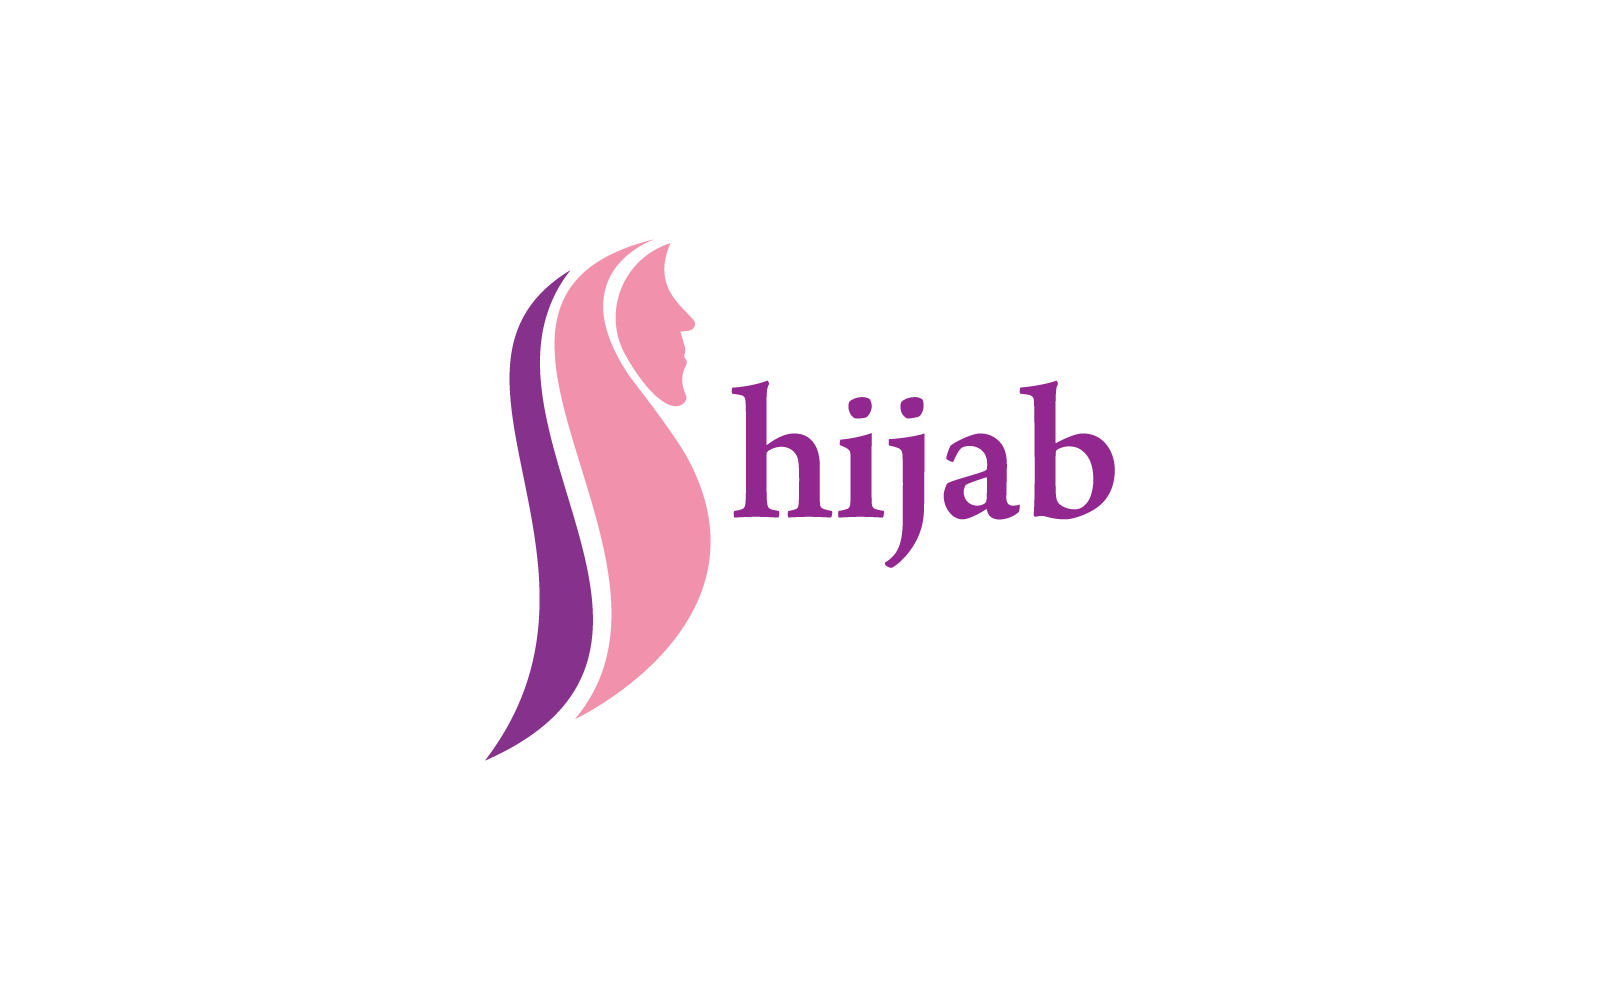 Modelo de ilustração vetorial do logotipo da loja Hijab